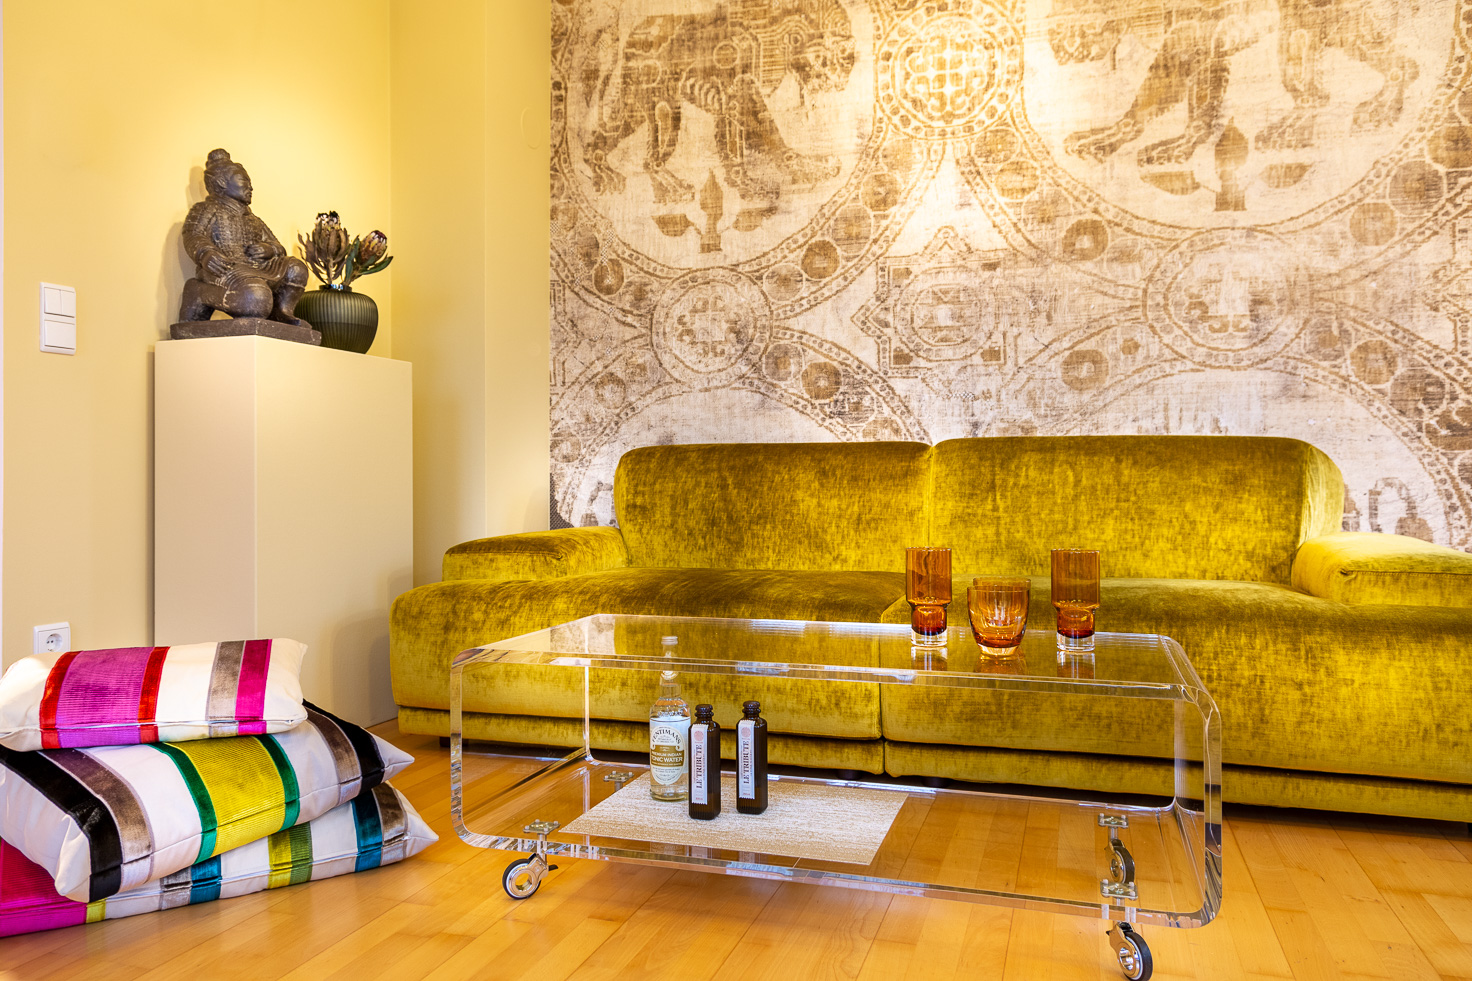 Goldfarbenes, samtiges Sofa mit Sofatisch aus Acryl, daneben Sitzkissen und Podest mit Terrakotta-Krieger Figur vor byzantinischer Tapete.